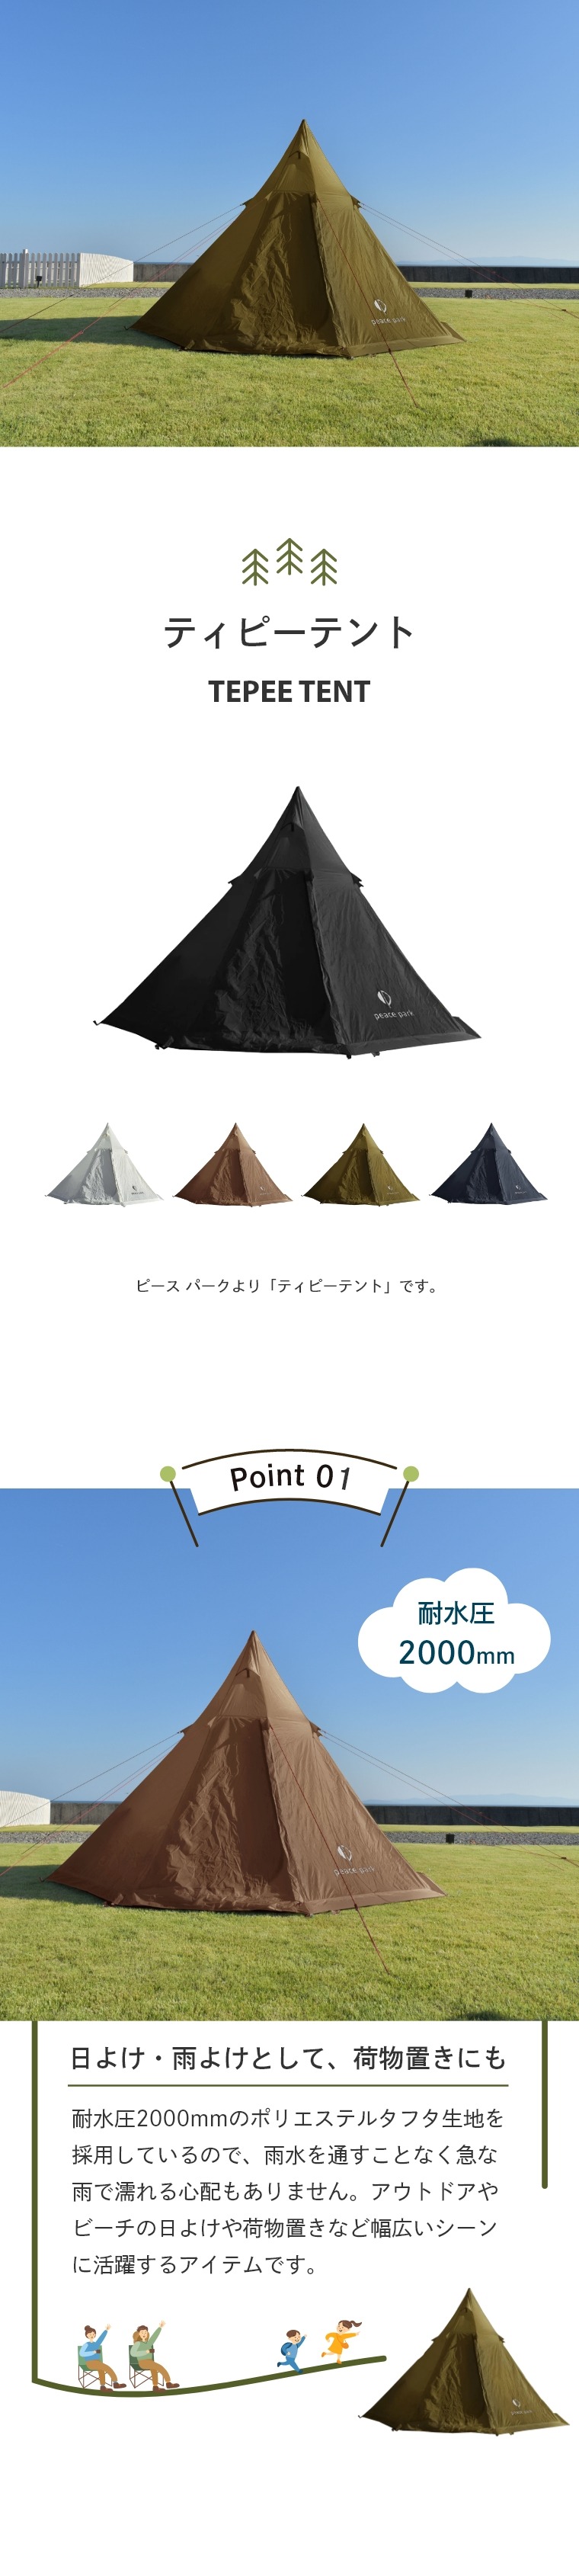 アウトドア 三角テント 耐水圧 2,000mm ティピーテント 2人〜用